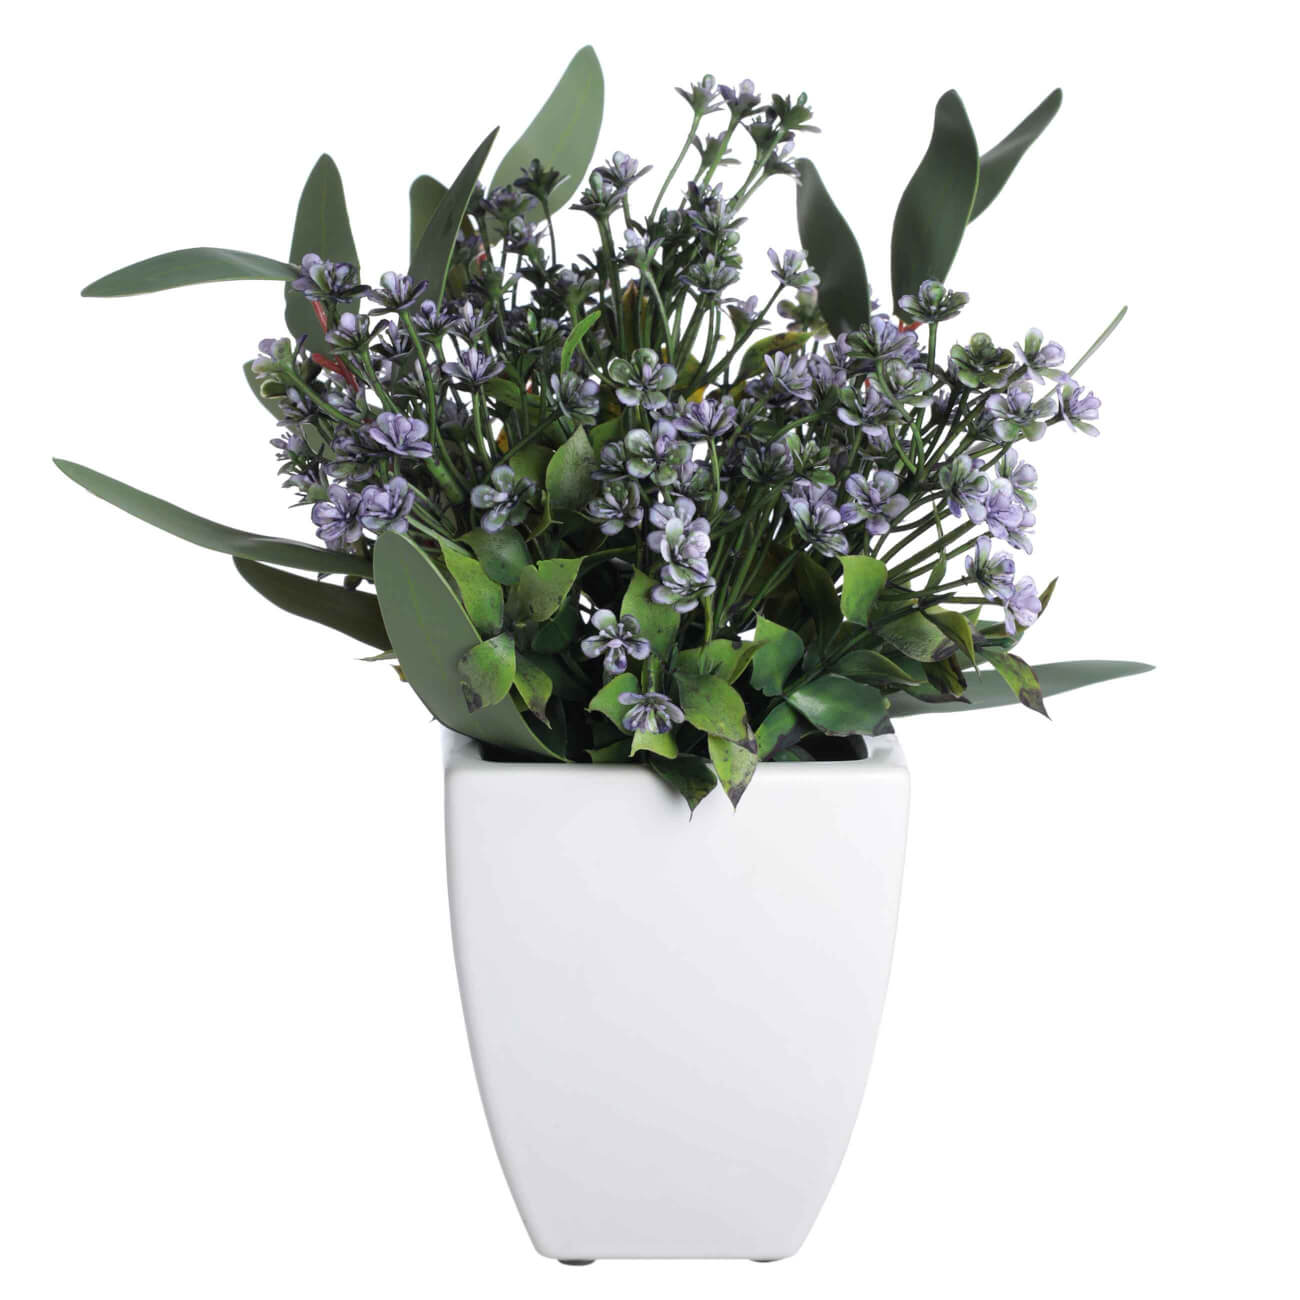 Растение искусственное, 27 см, в горшке, пластик/ПВХ, Фиолетовые цветы, Pot garden tetra decoart green cabomba 4 xl растение аквариумное